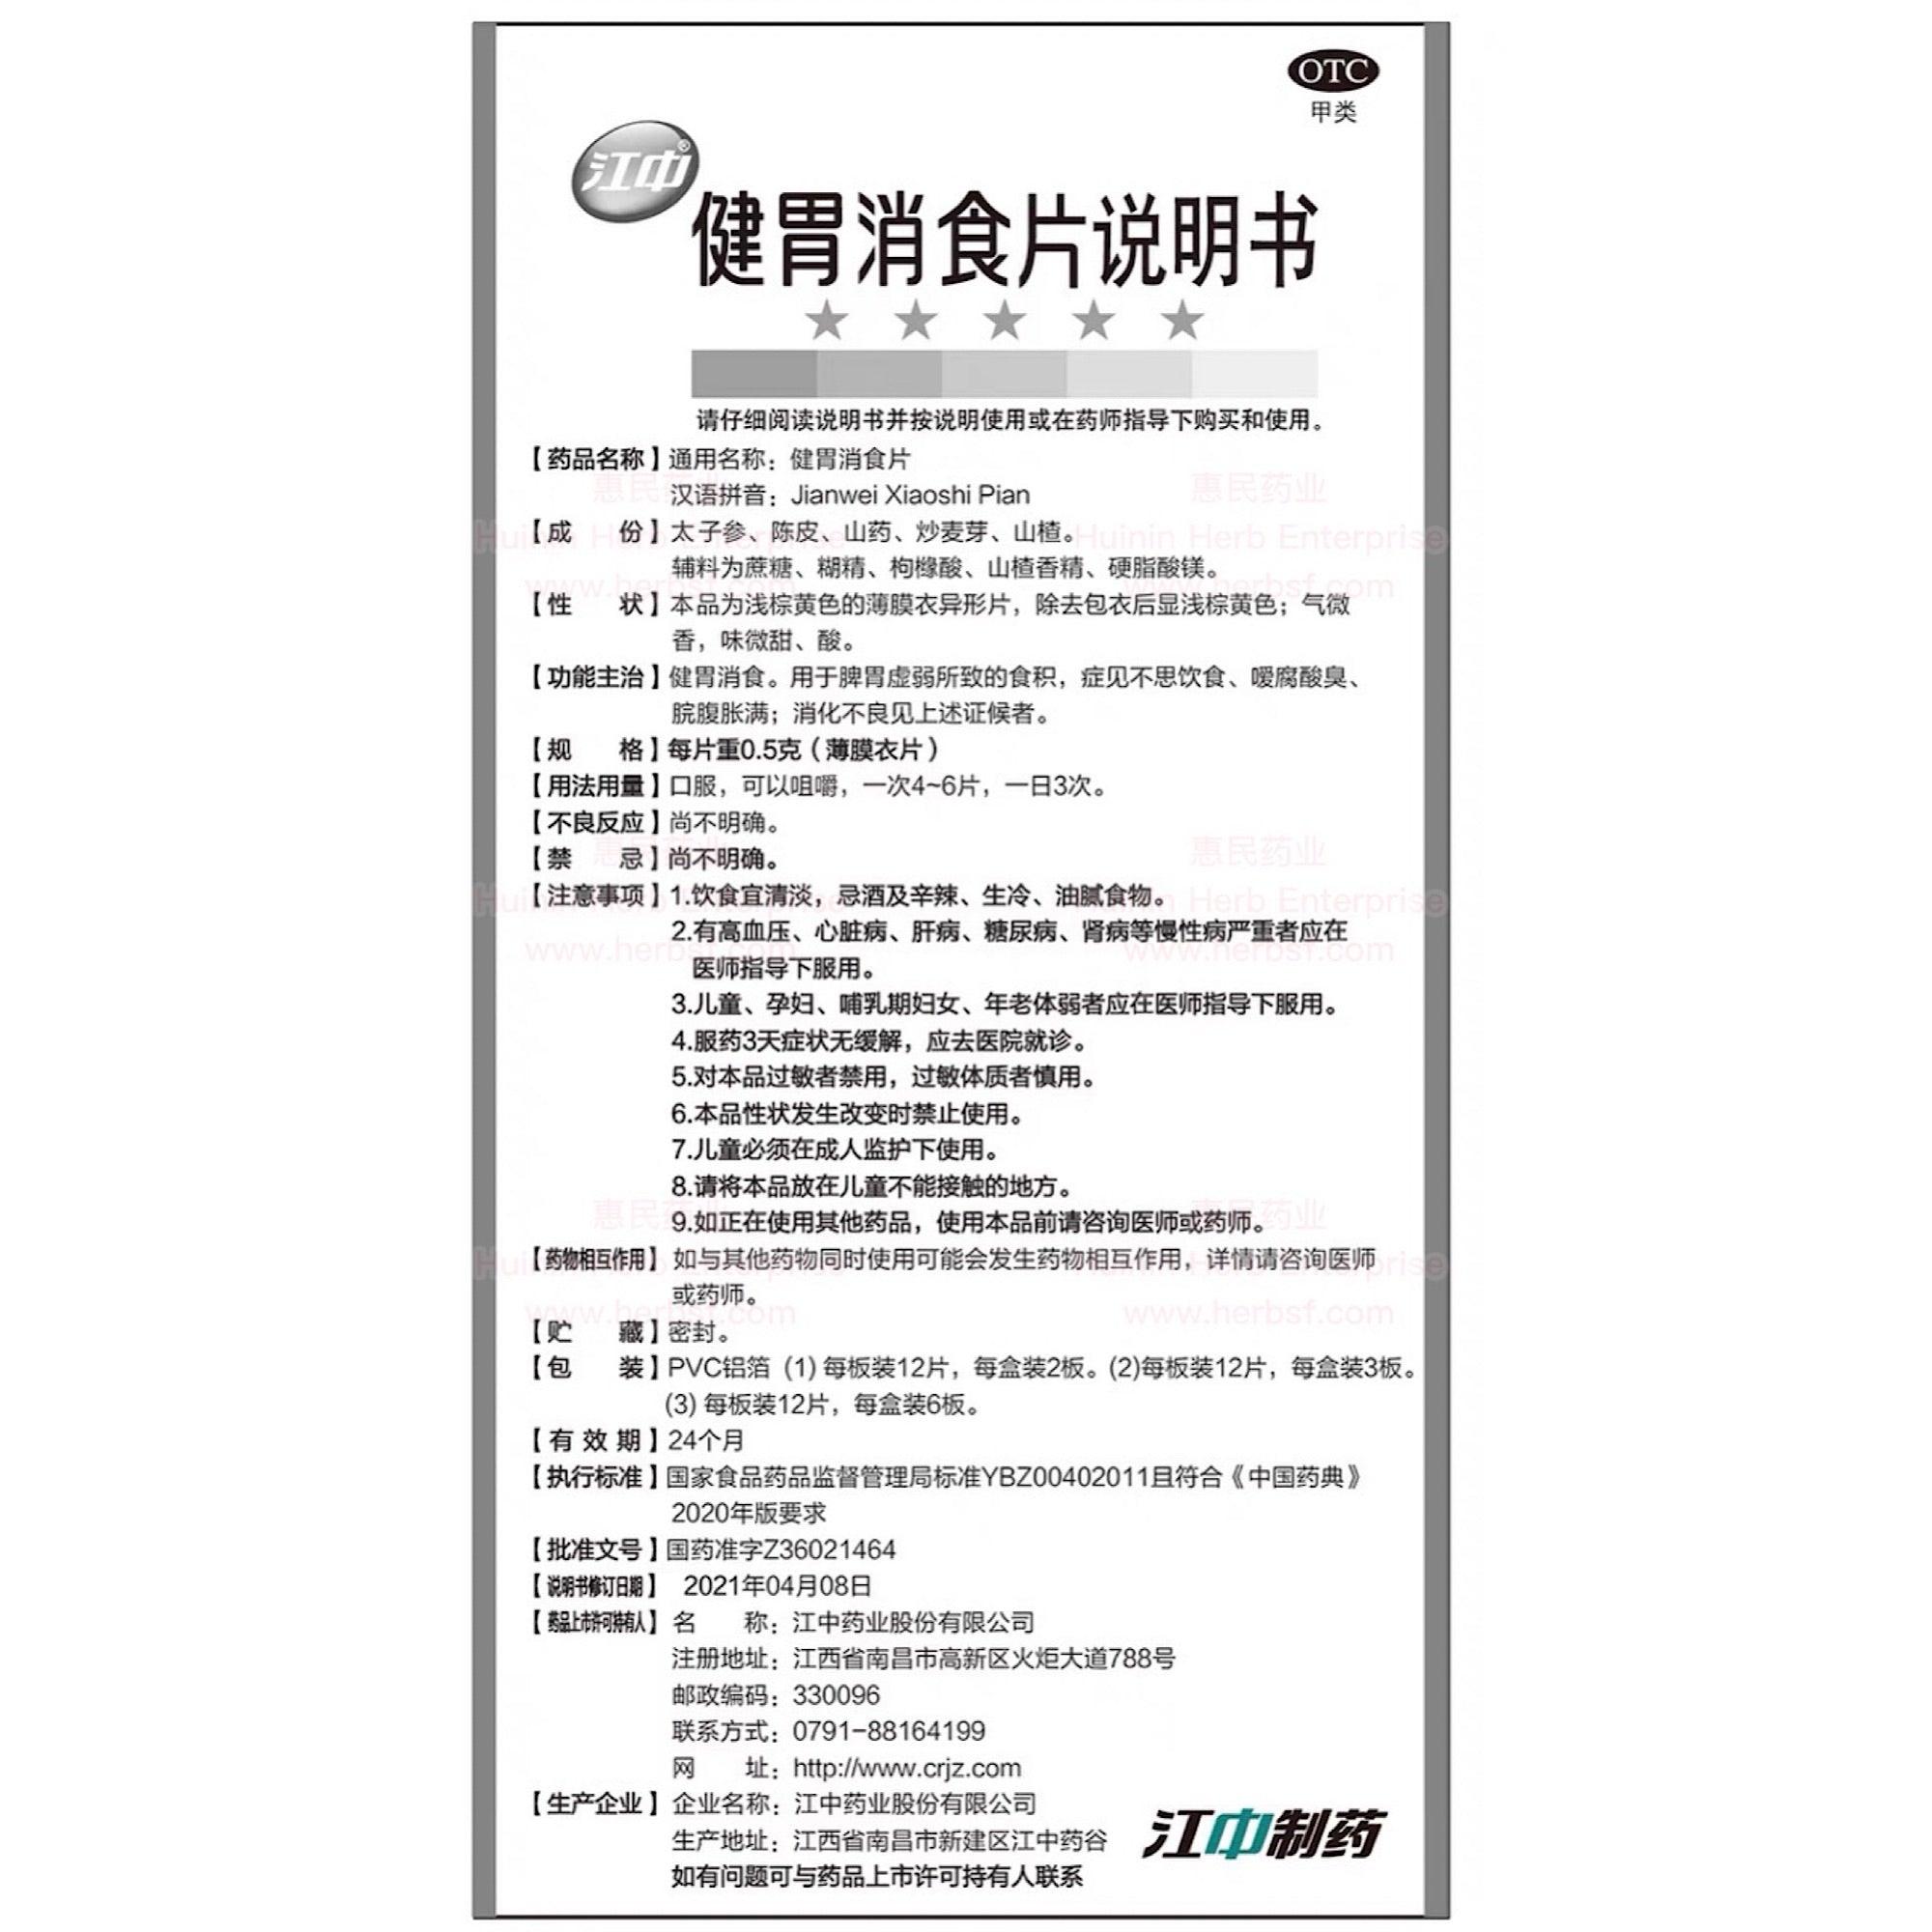 JianWei XiaoShi Pian - Huimin Herb Online, LLC